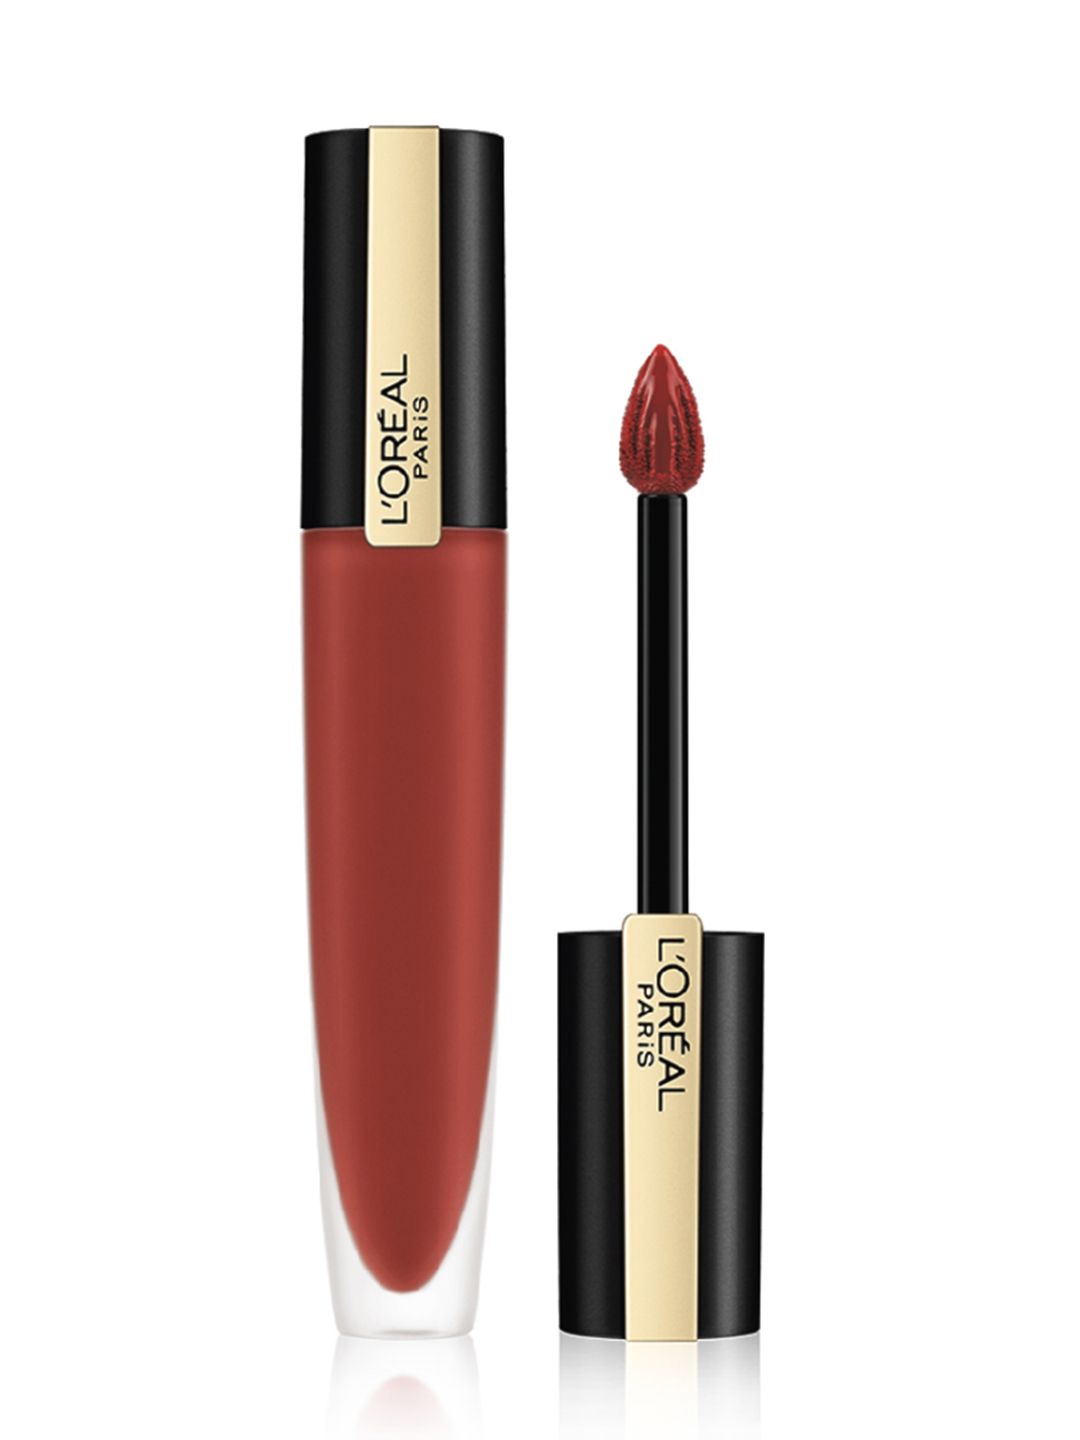 LOreal Paris Rouge Signature Matte Liquid Lipstick 7 ml - I Insist 151 Price in India